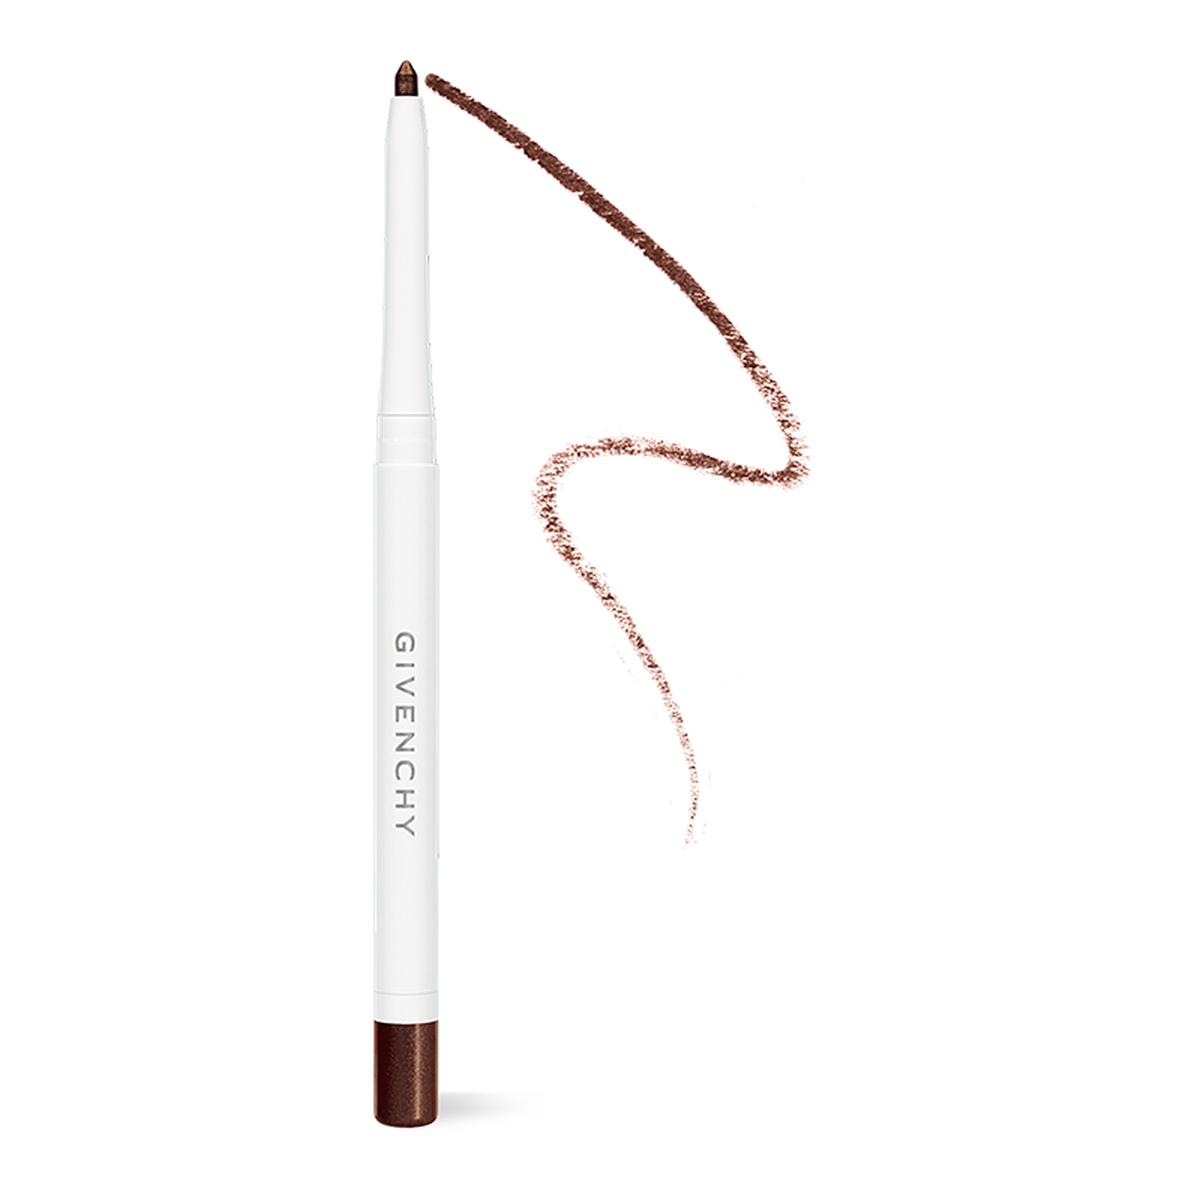 Givenchy Voděodolná tužka na oči Couture Waterproof (Eyeliner) 0,3 g 02 Chestnut